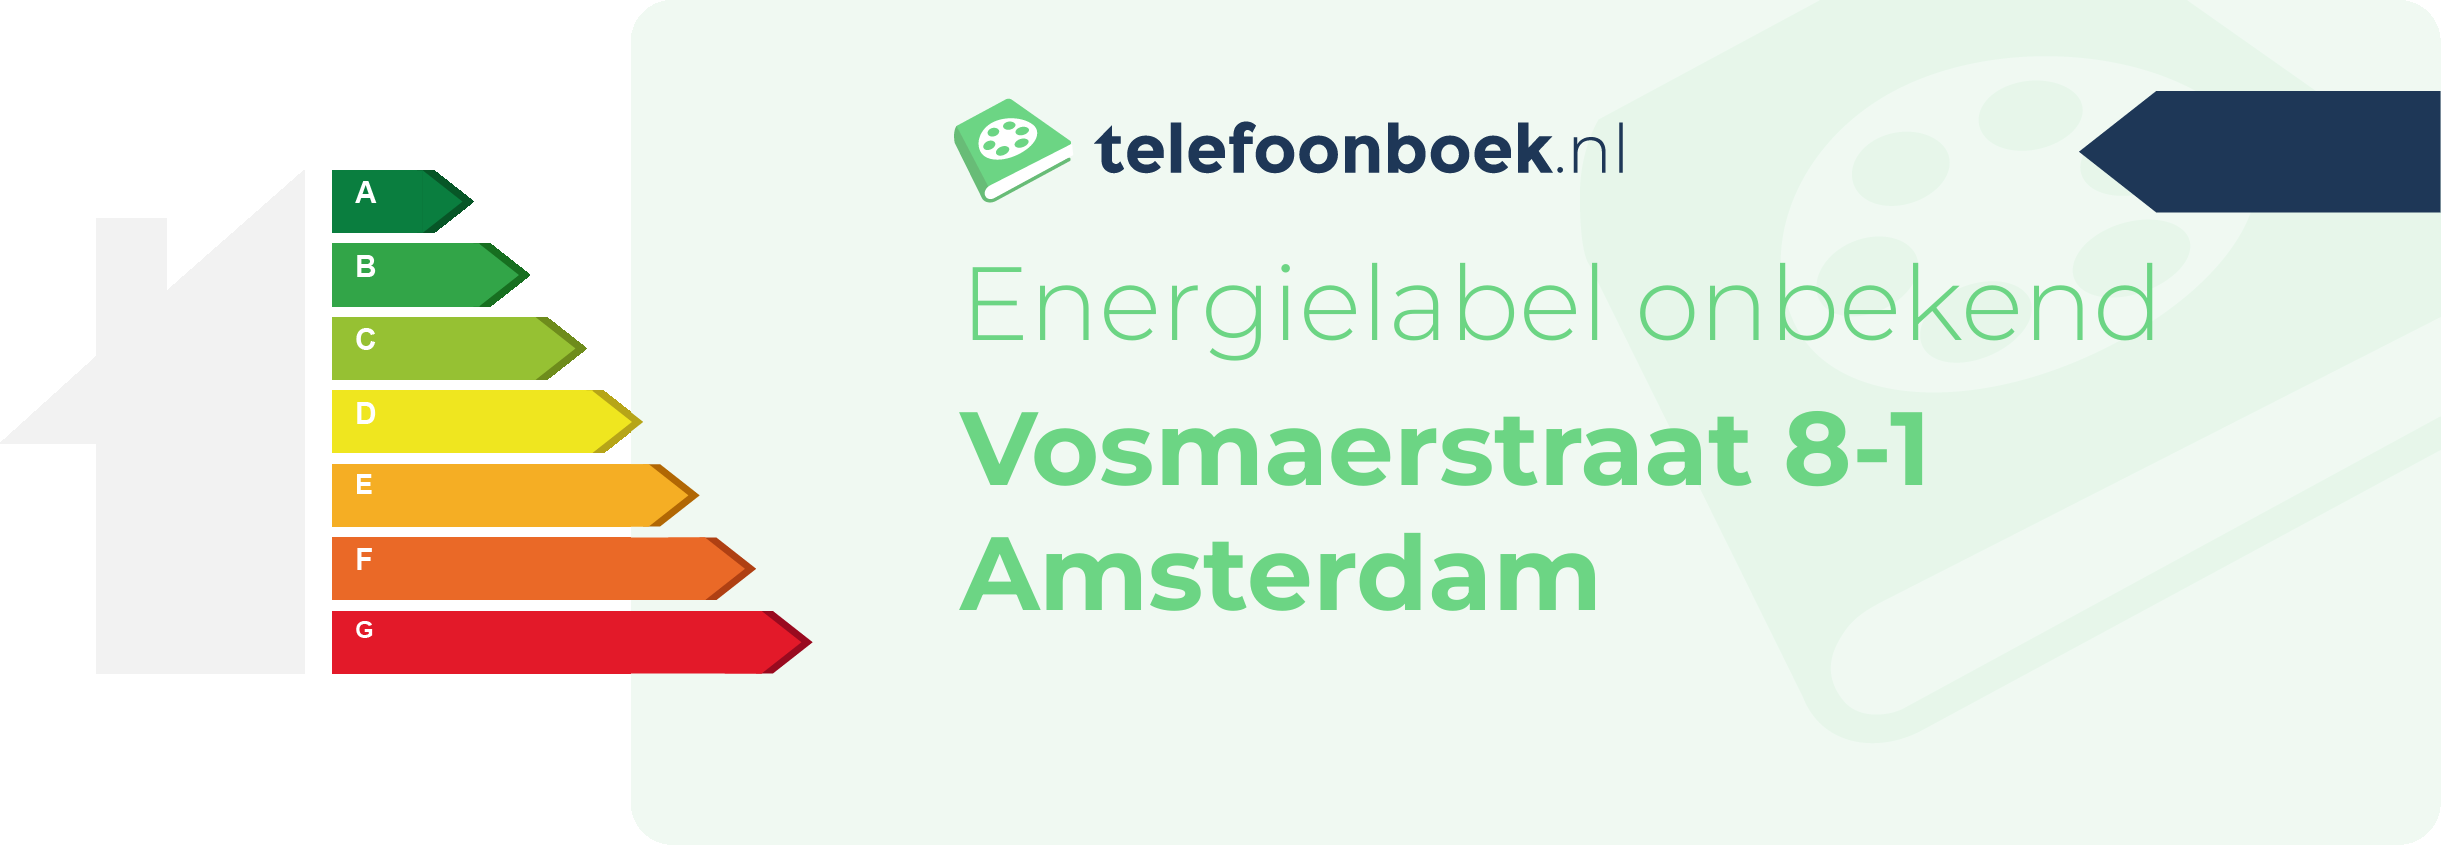 Energielabel Vosmaerstraat 8-1 Amsterdam